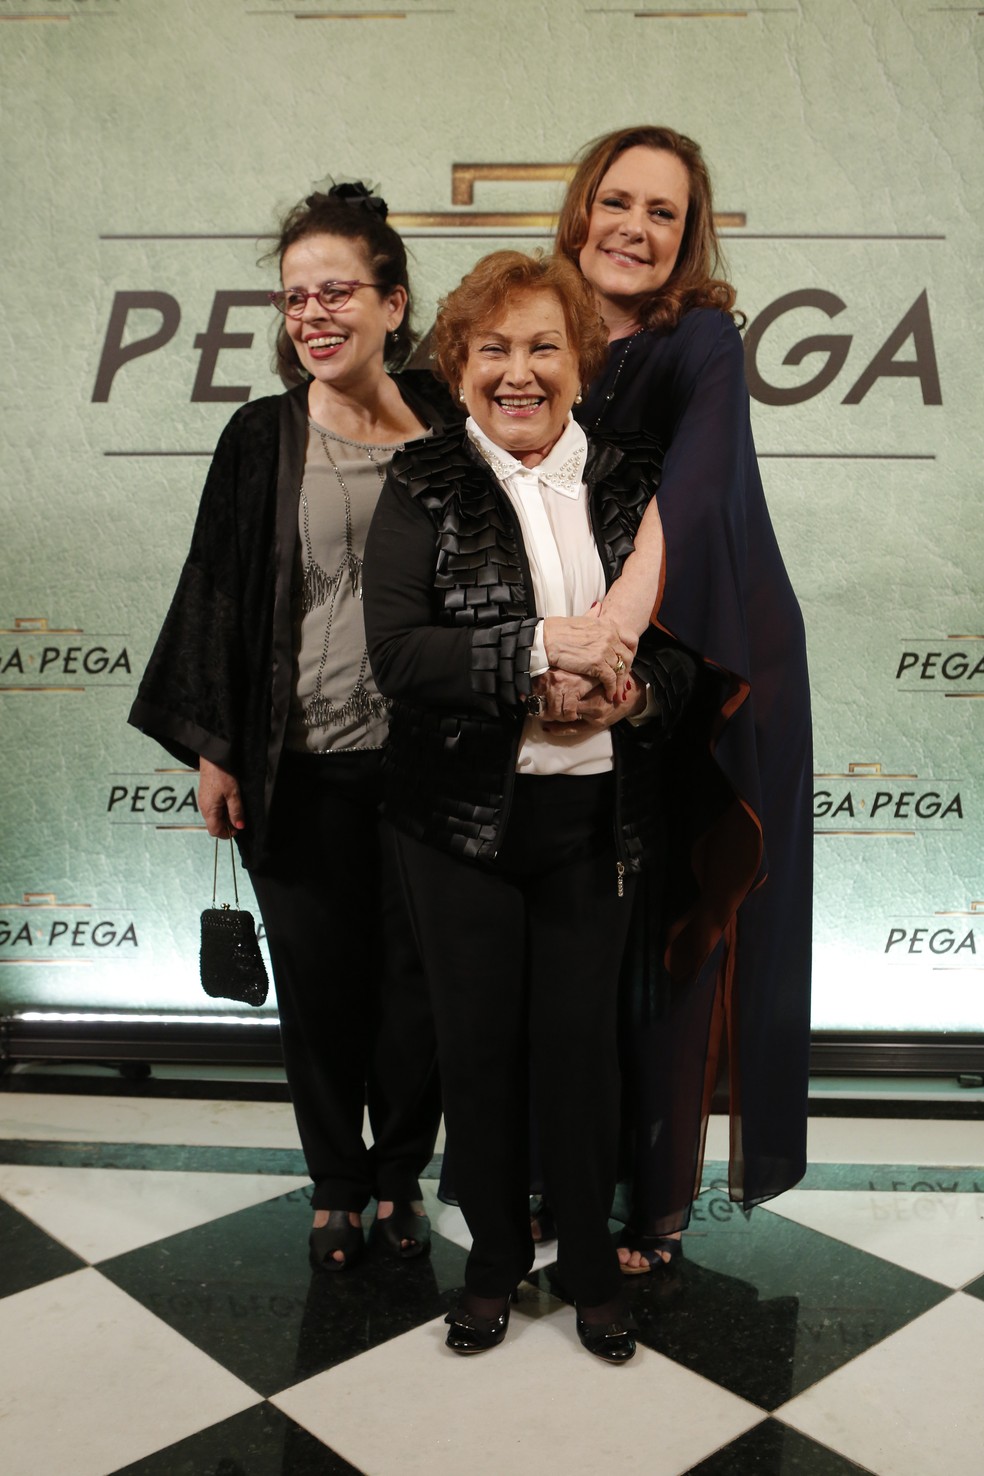 Cristina Pereira, Nicette Bruno e Elizabeth Savala posam para os fotógrafos (Foto: Felipe Monteiro/Gshow)